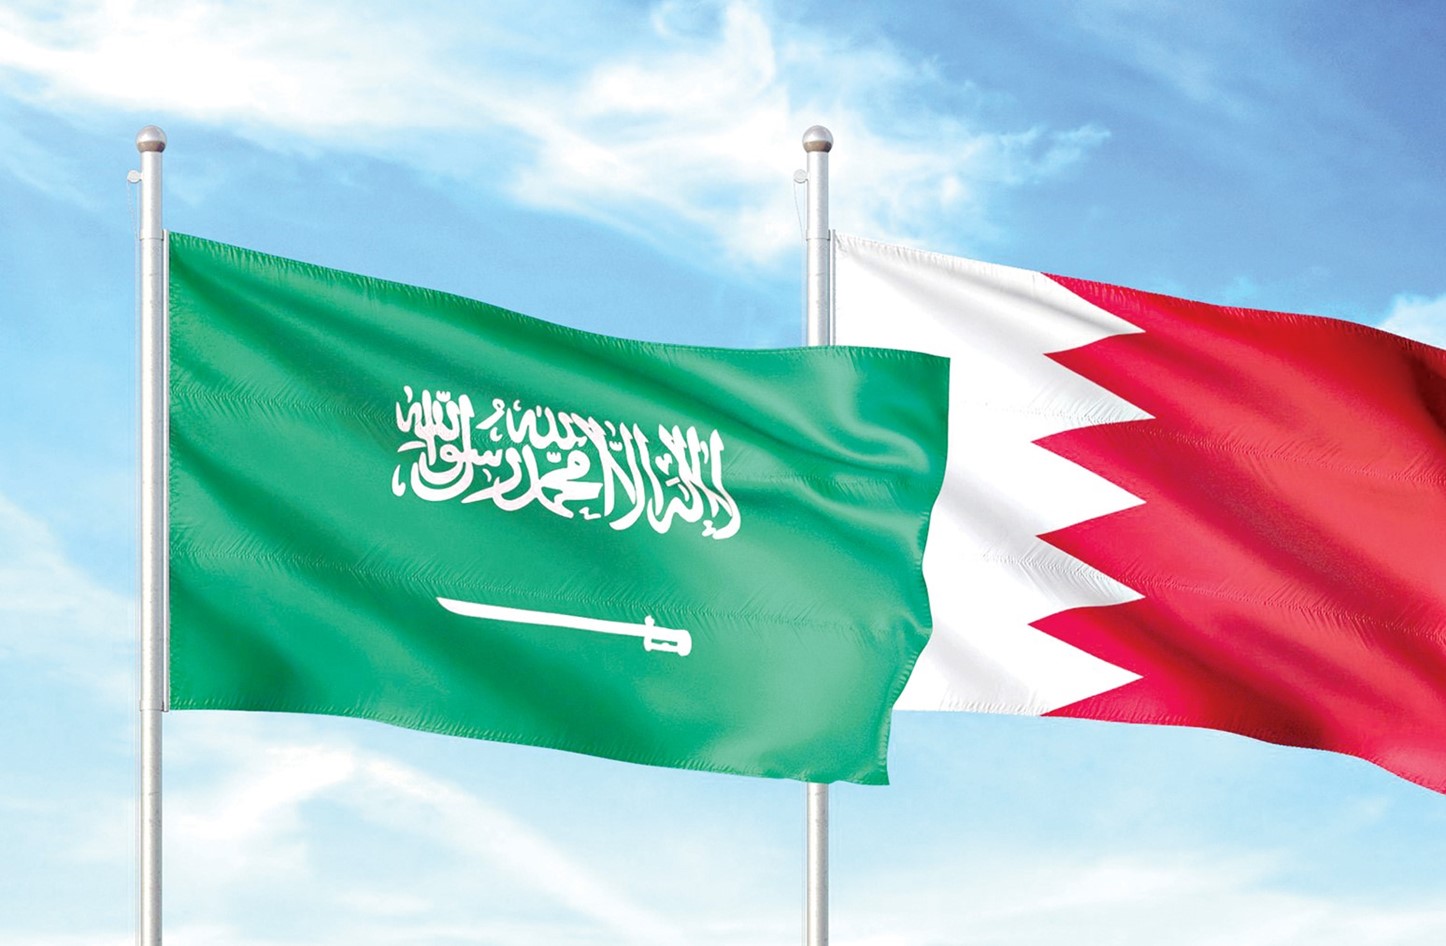 البحرين: إطلاق الحوثيين مُسيرة باتجاه السعودية اعتداء سافر وتهديد للمدنيين